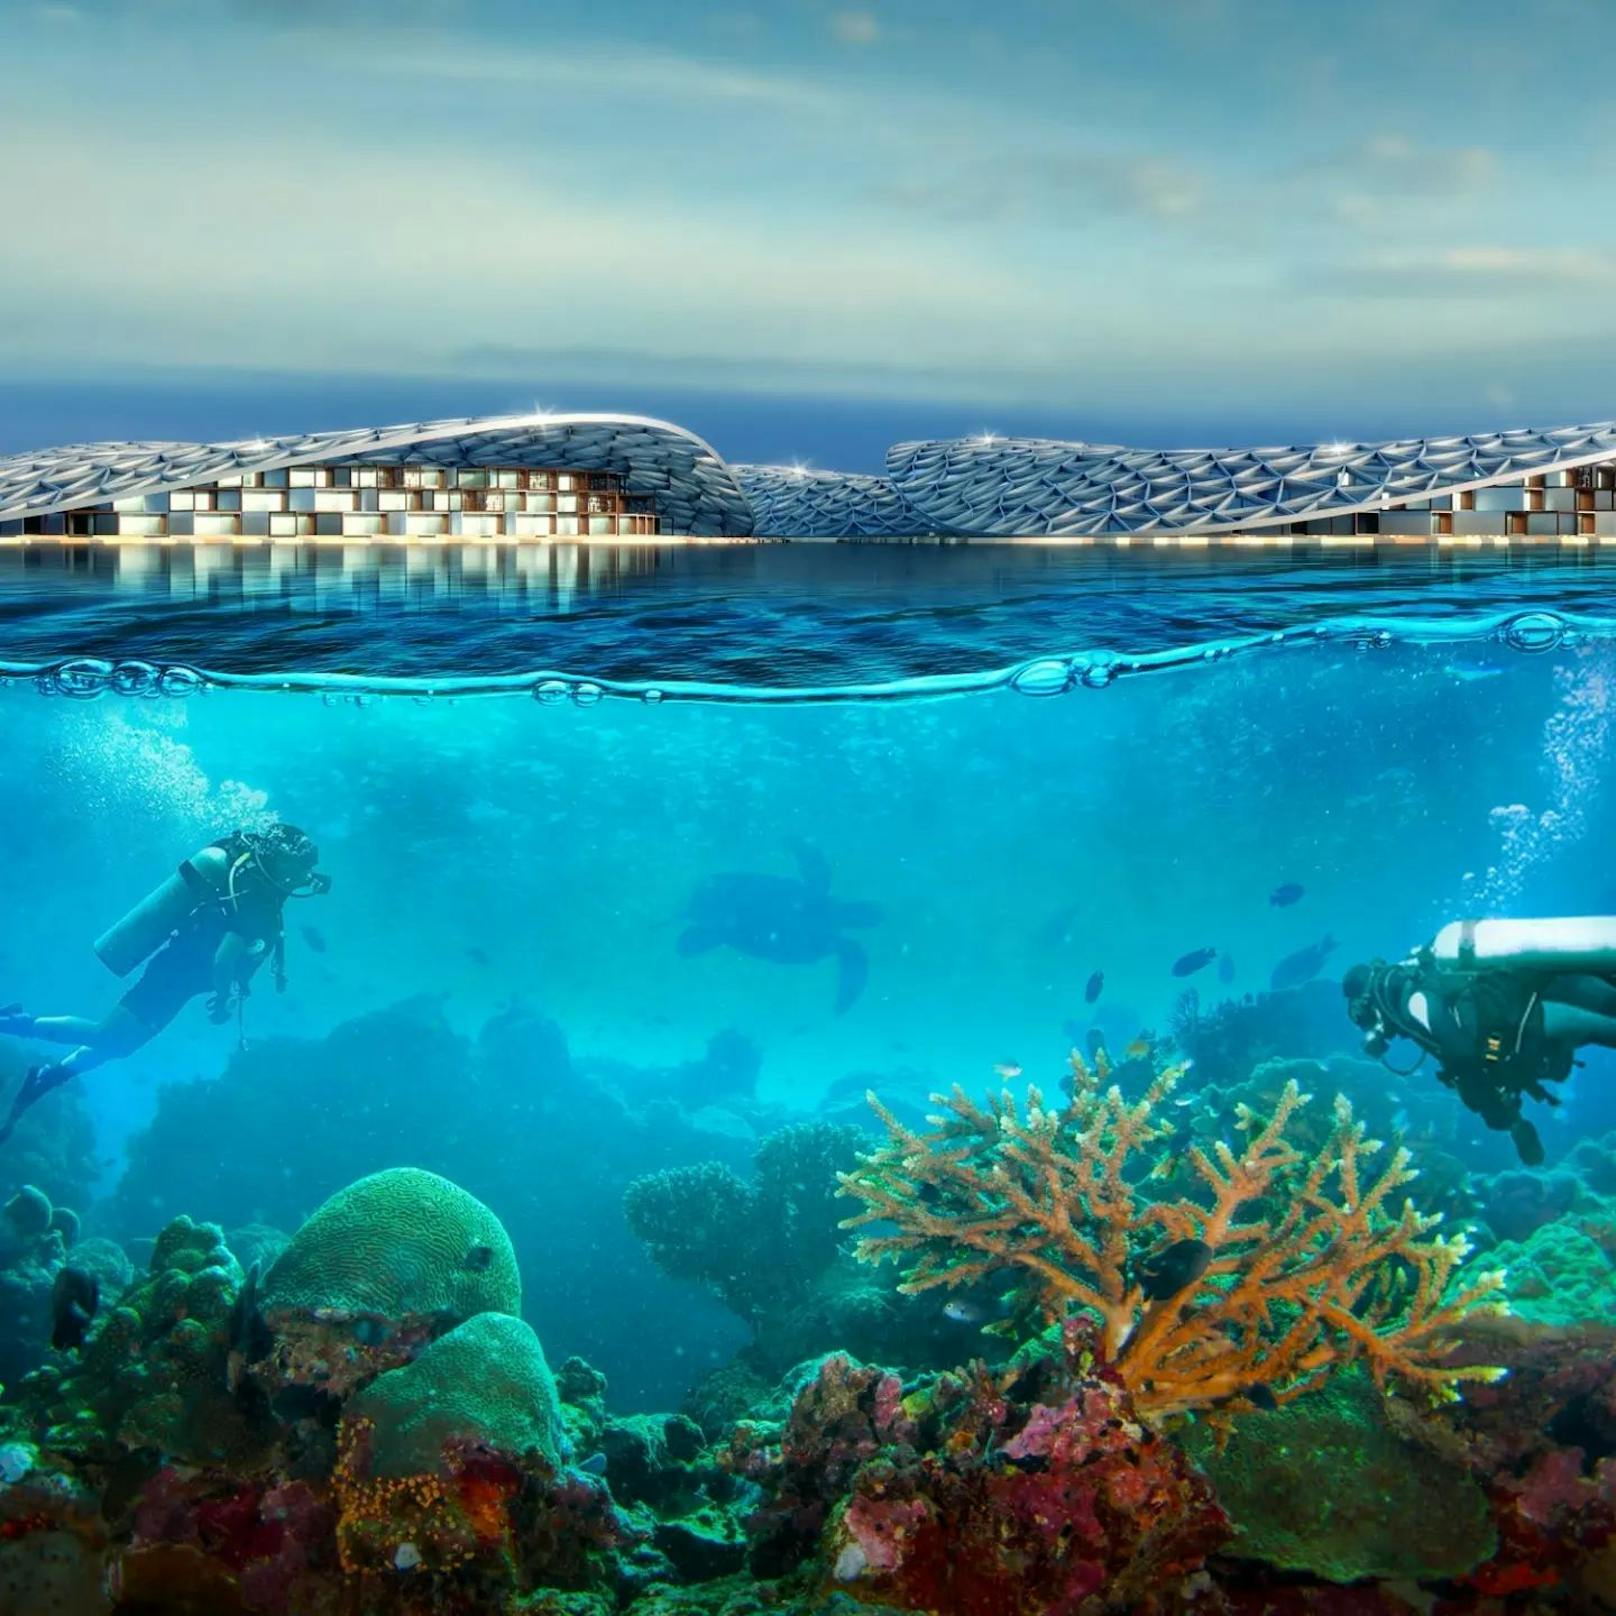 Pläne für das Projekt "Dubai Reefs"